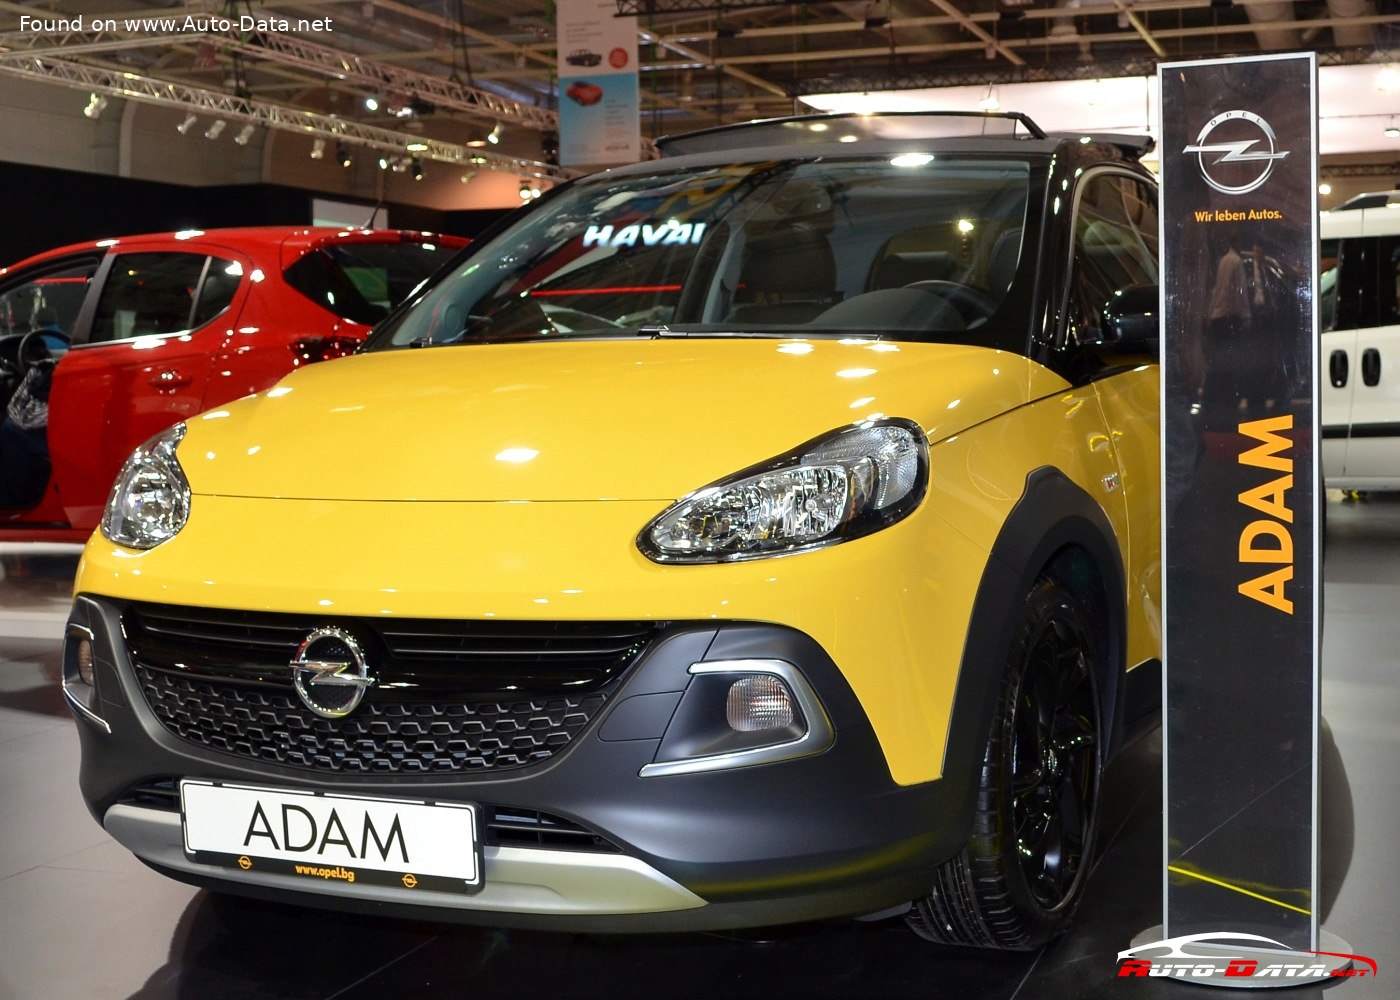 2012 Opel Adam 1.2 (70 Hp)  Technical specs, data, fuel consumption,  Dimensions